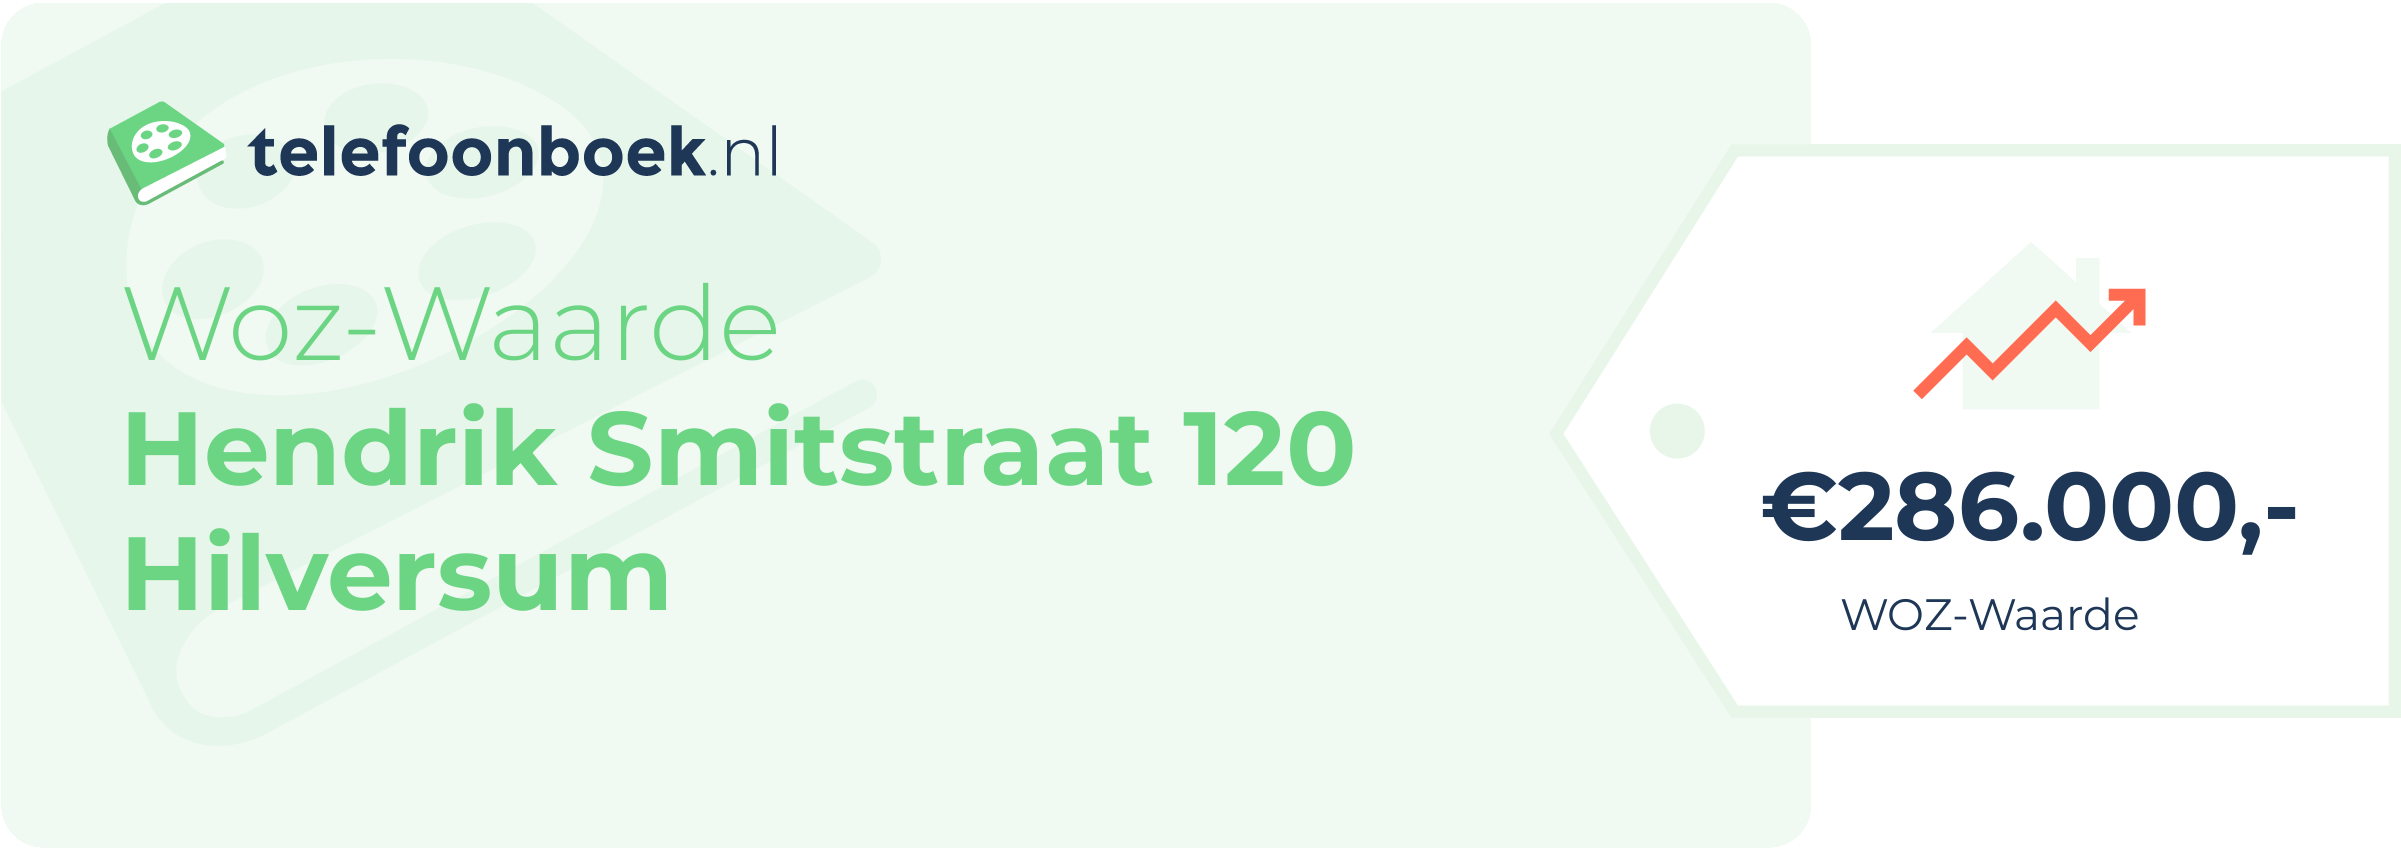 WOZ-waarde Hendrik Smitstraat 120 Hilversum